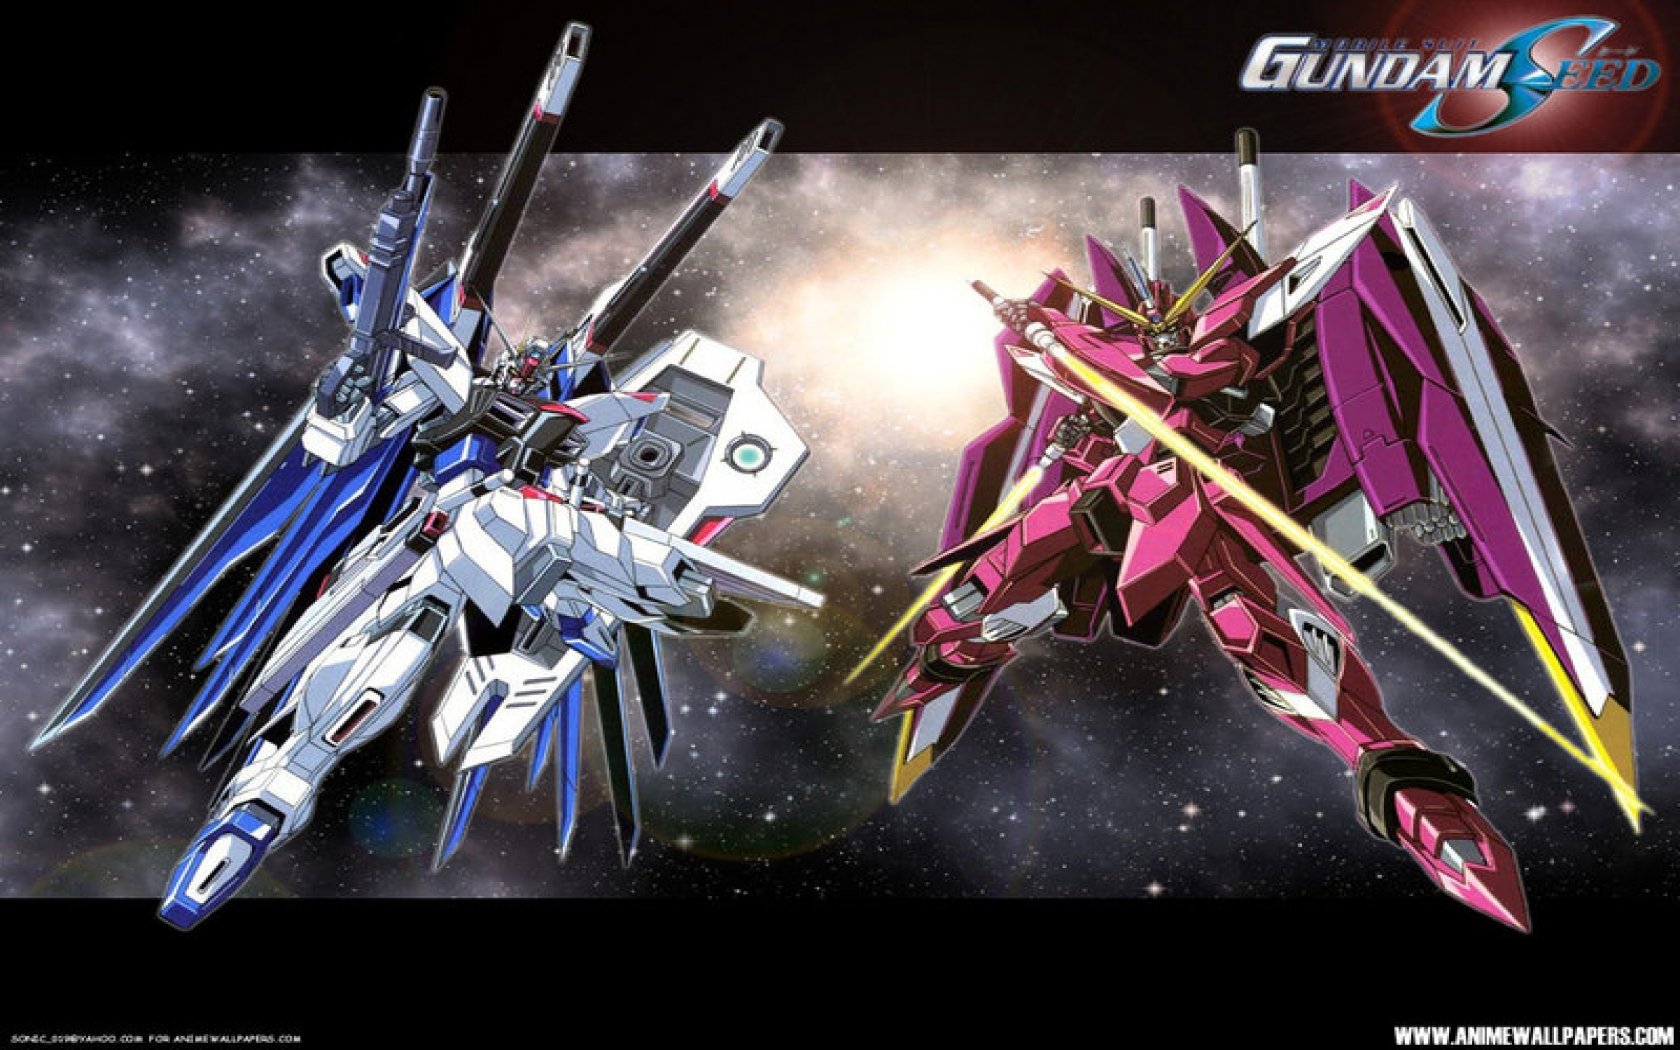 Gundam Seed gundam seed 1680 x 1050 Fondos de Pantalla y